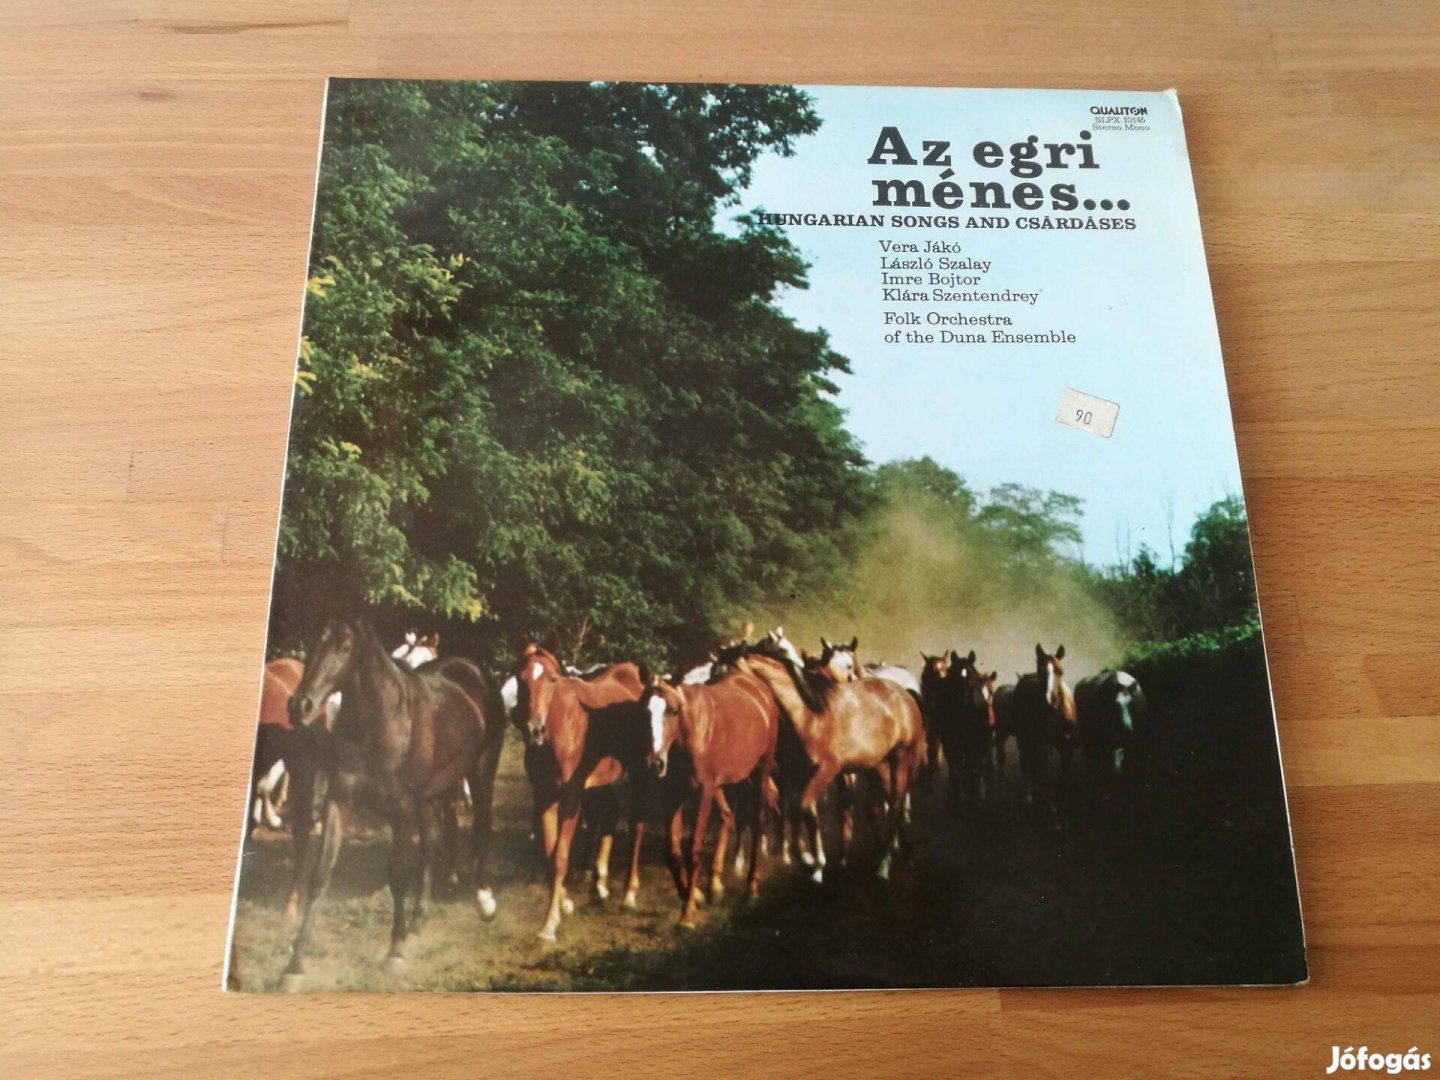 Az egri ménes. Hungarian songs and csárdáses (Qualiton, 1979, LP)